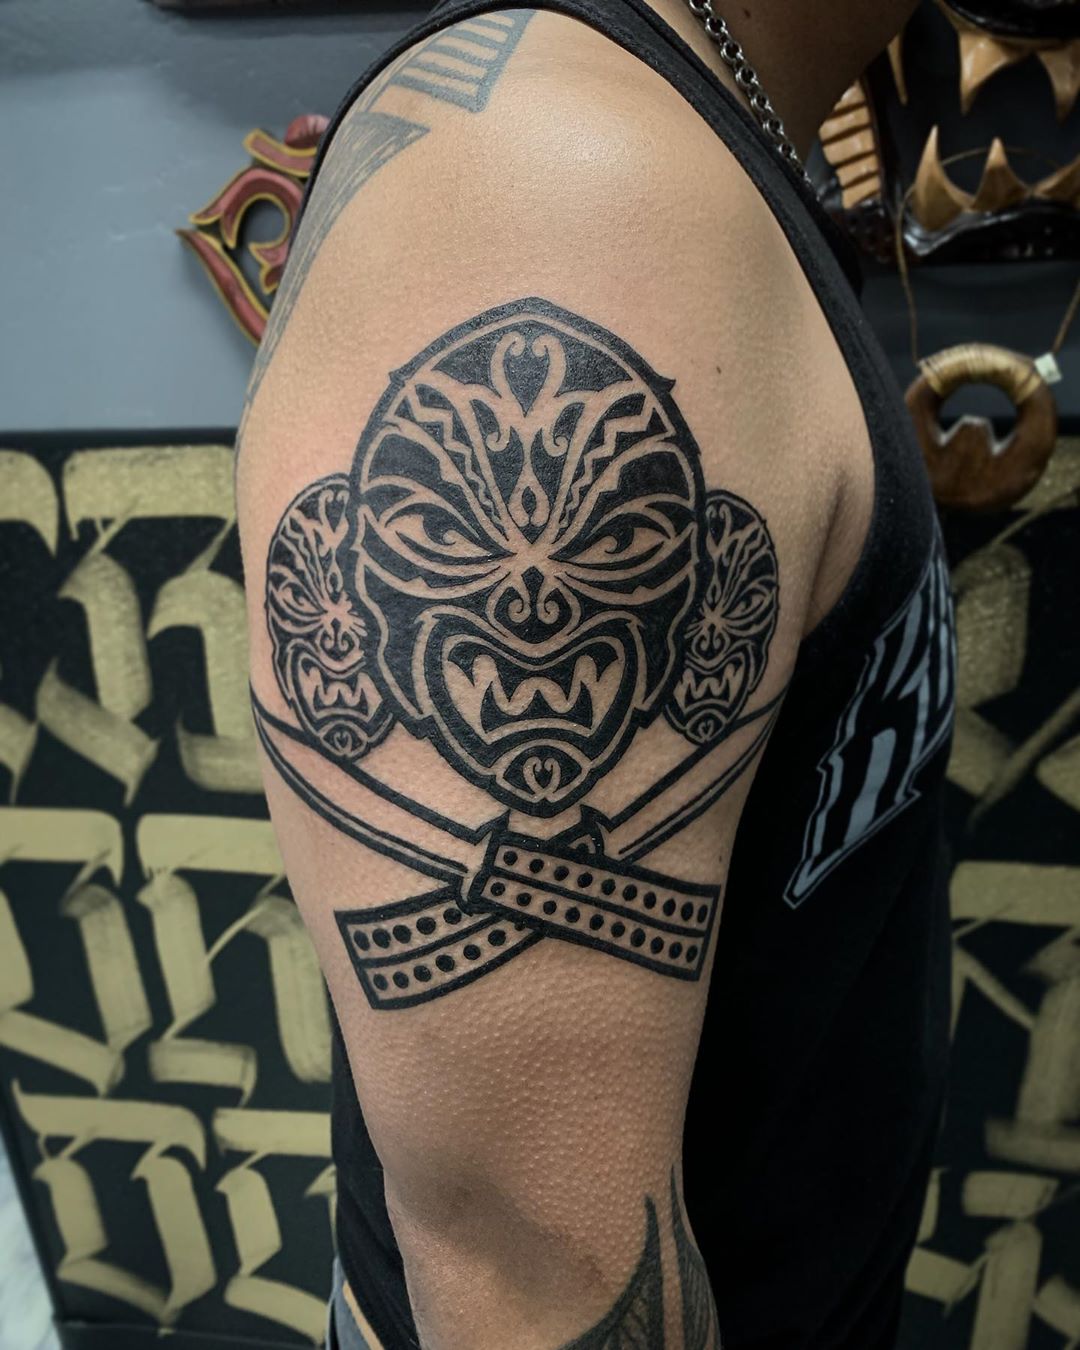 Filipino Tattoo Ideas